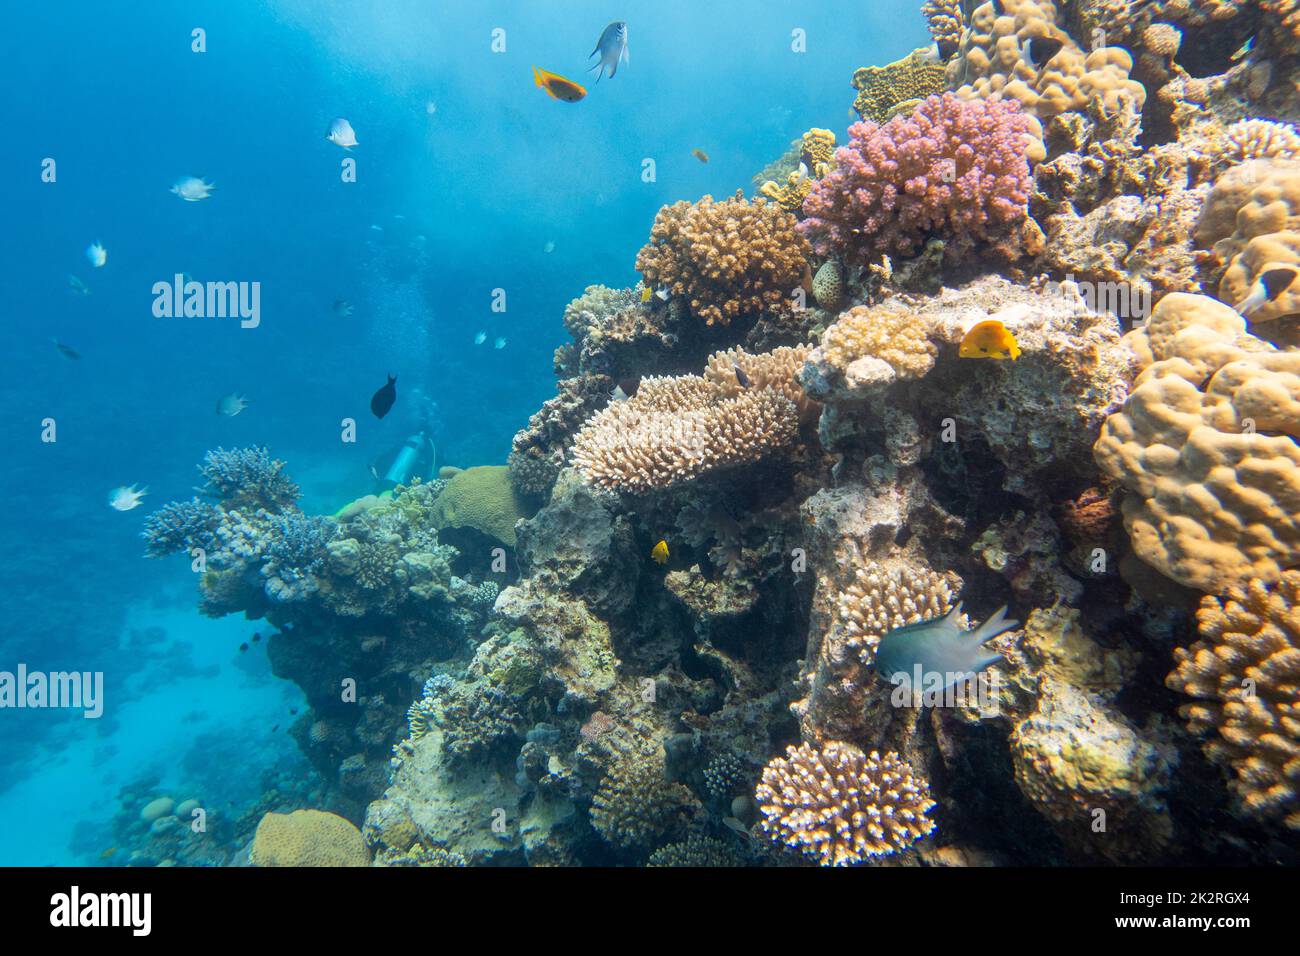 Colorata e pittoresca barriera corallina in fondo al mare tropicale, coralli duri e bolle d'aria in acqua, paesaggio subacqueo Foto Stock